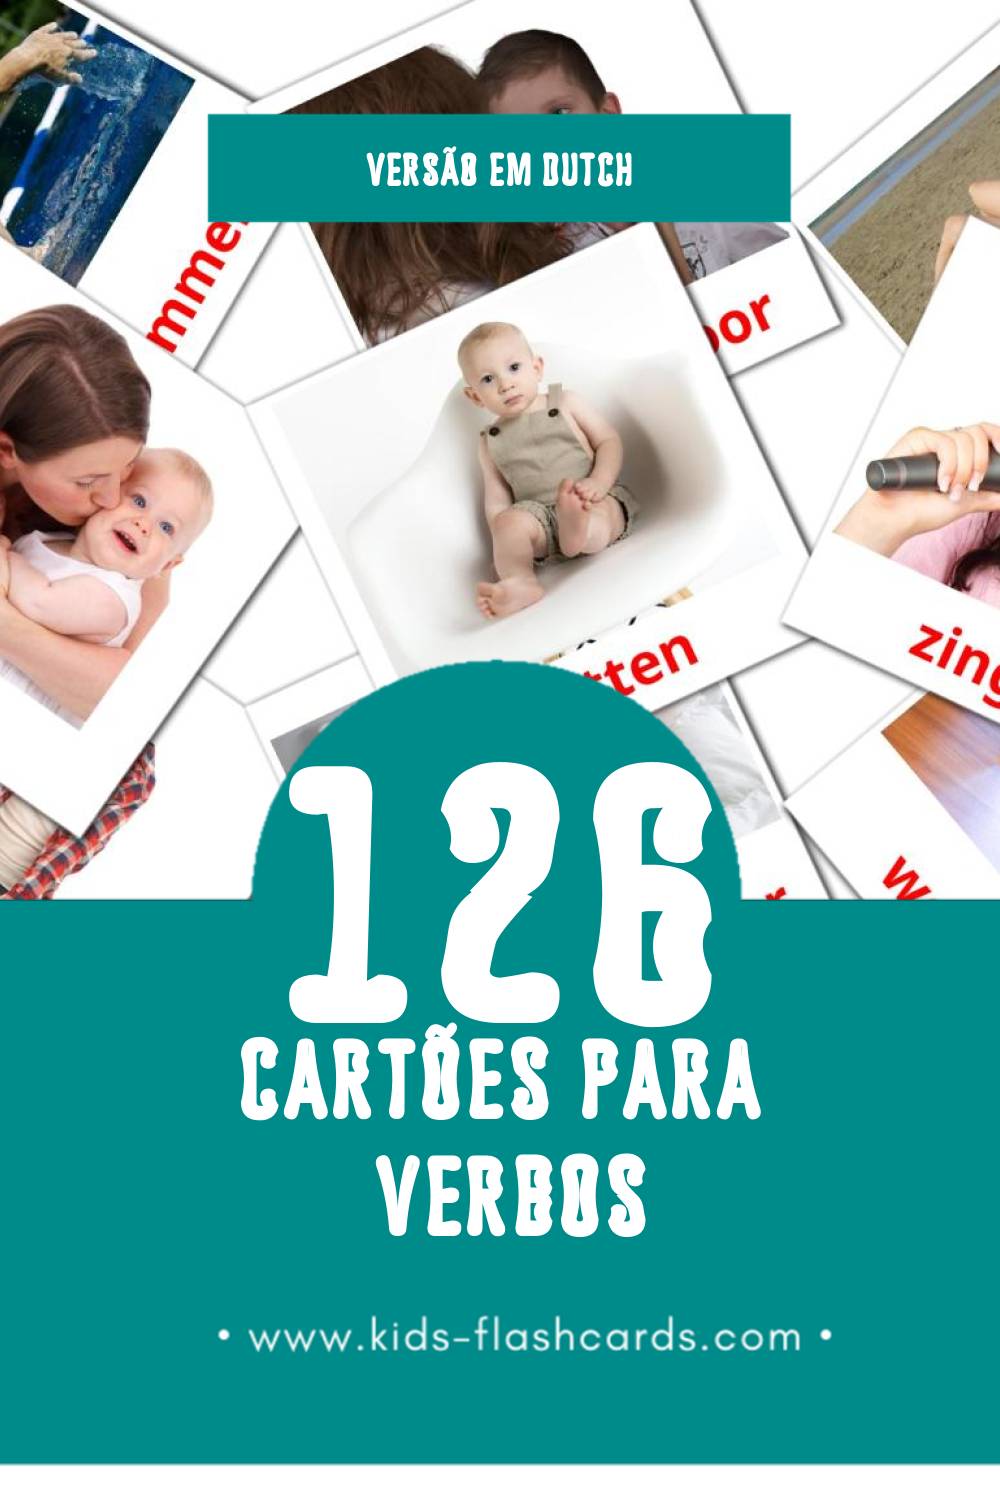 Flashcards de Werkwoorden Visuais para Toddlers (126 cartões em Dutch)